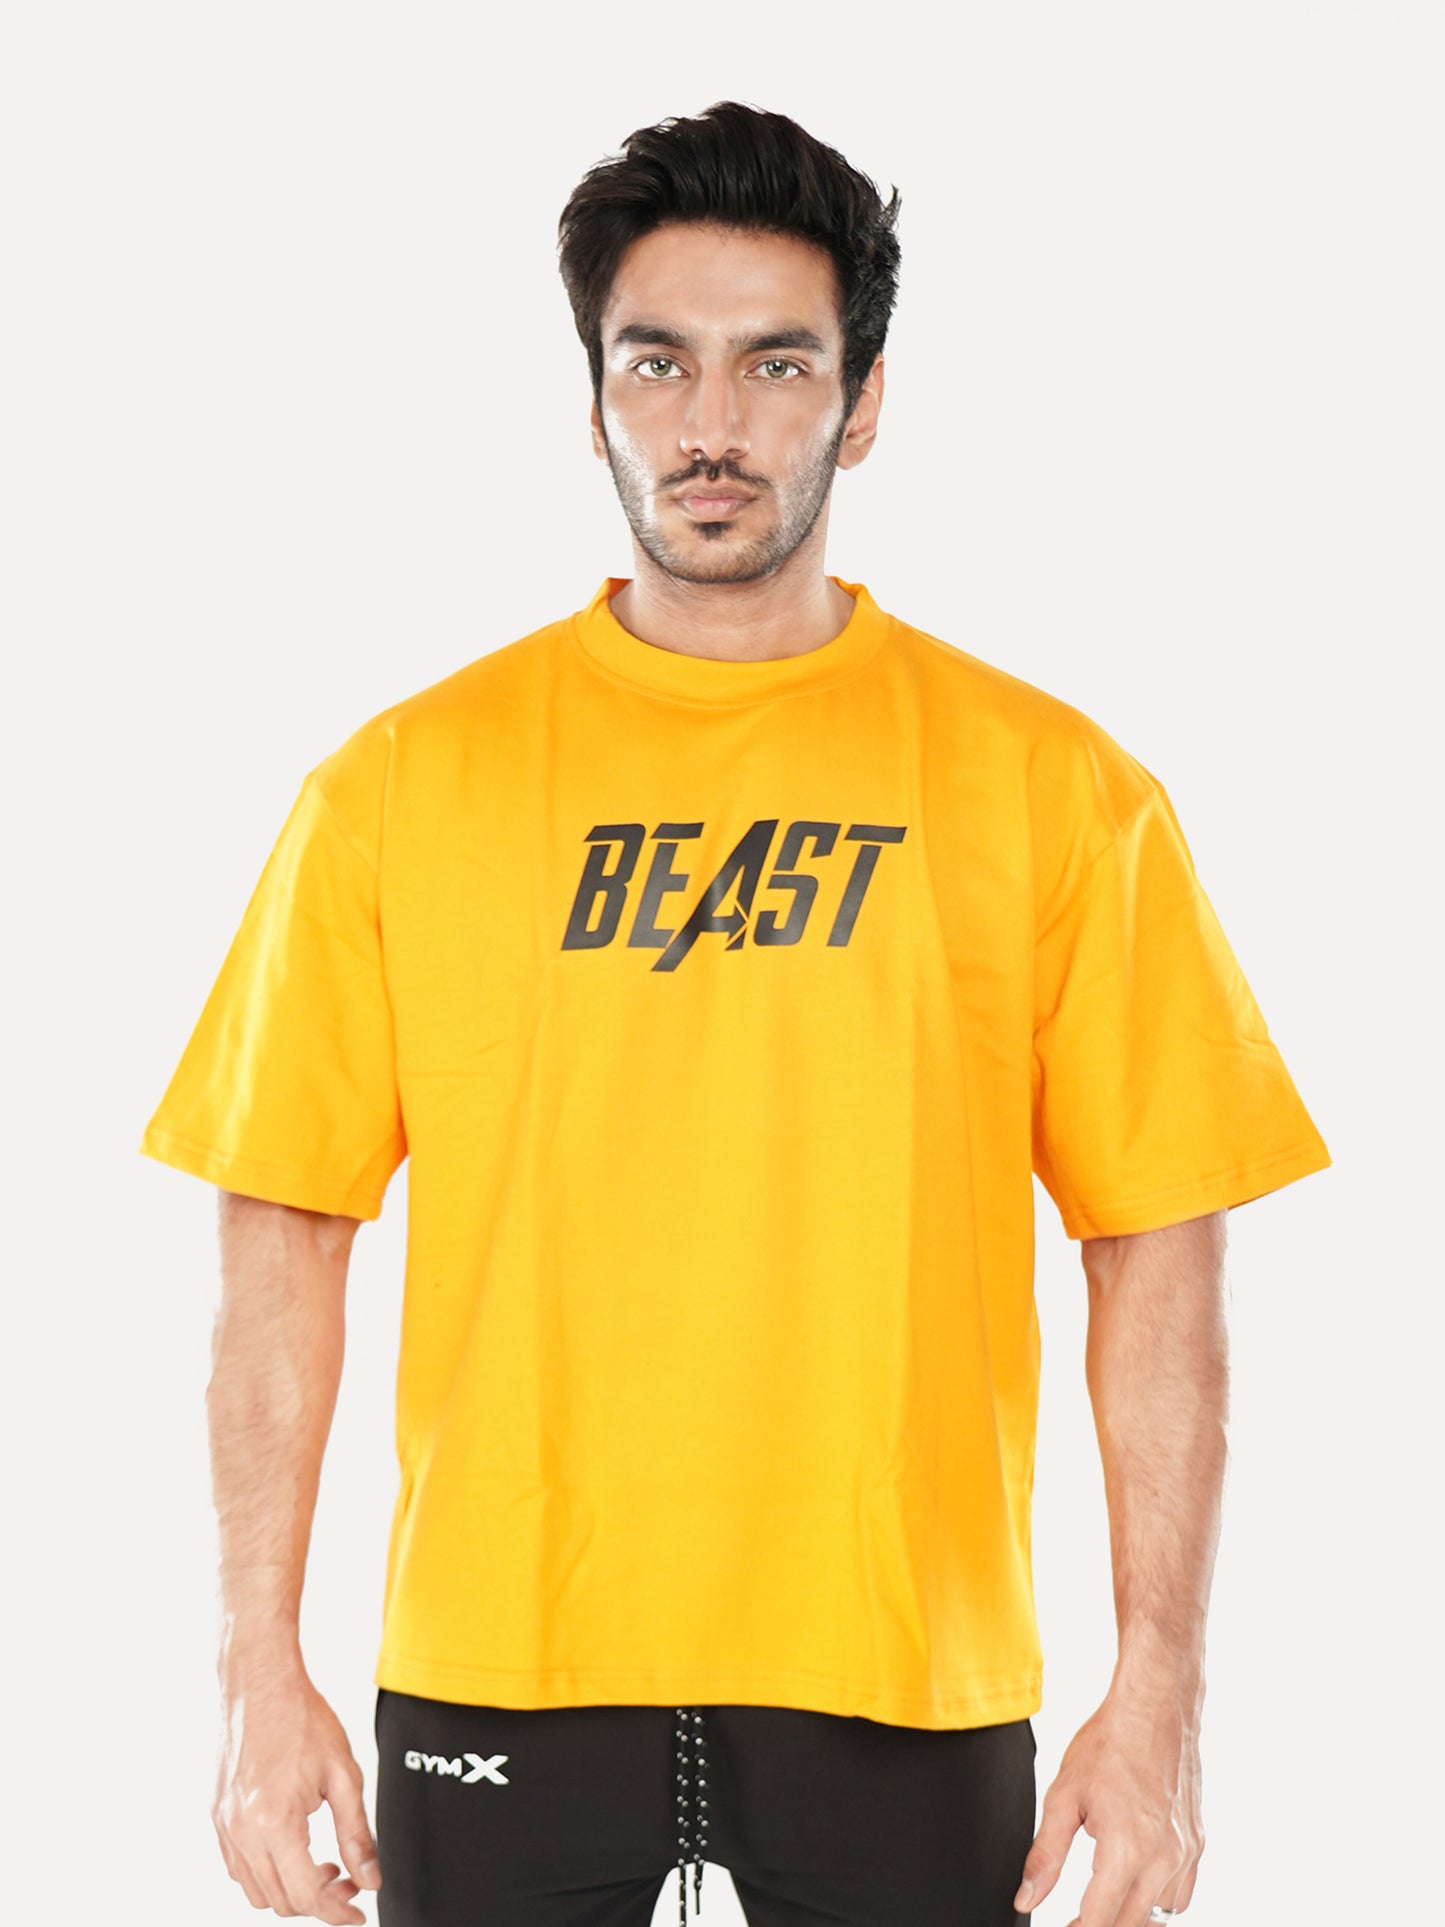 Oversized GymX Yellow Tee: Beast- Sale